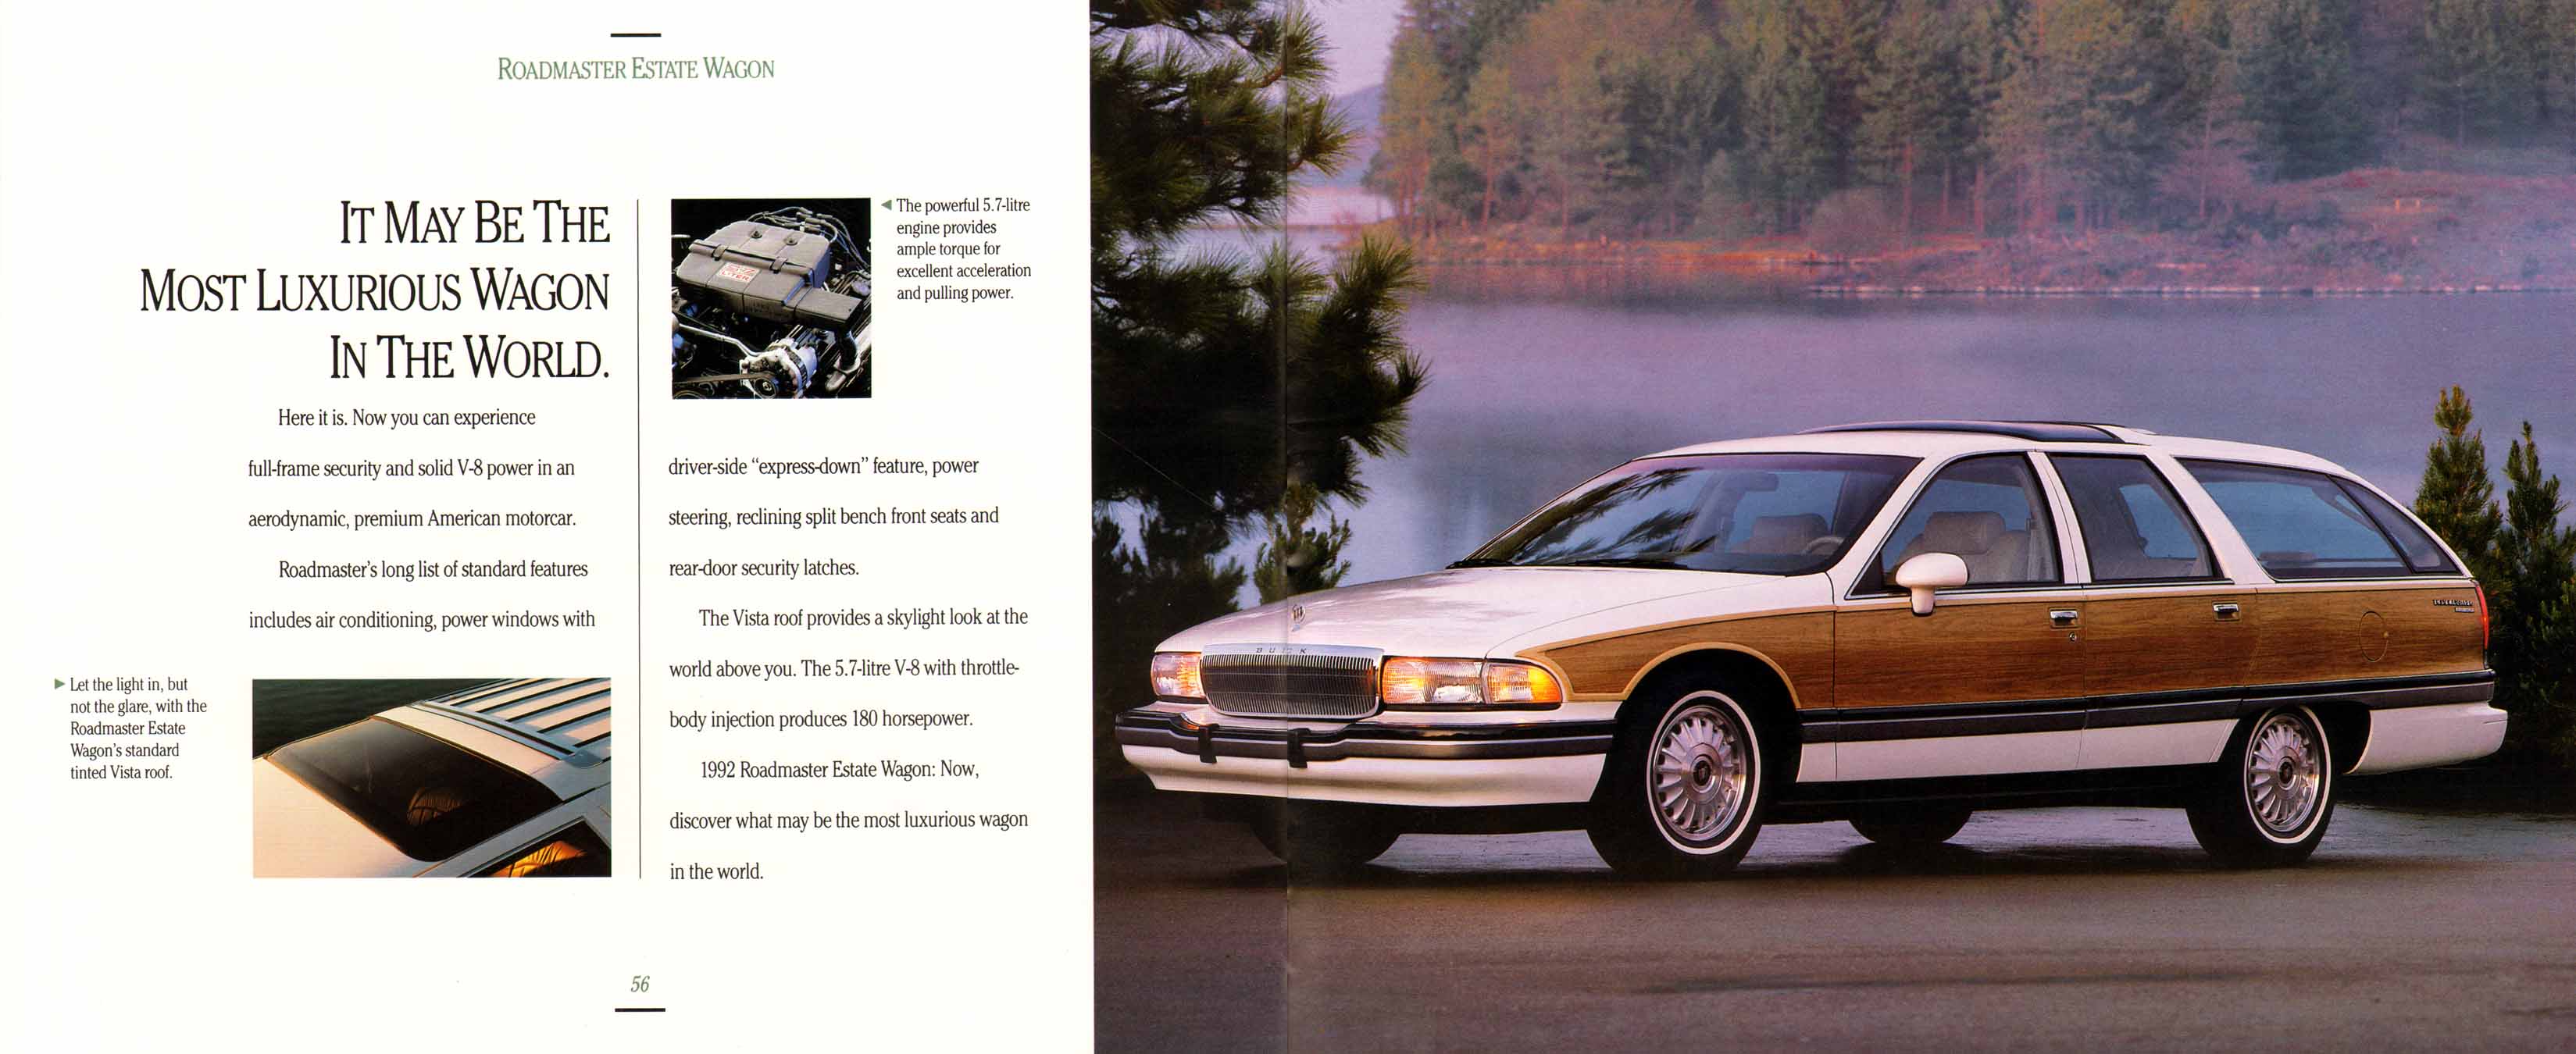 1992 Buick Full Line Prestige-56-57